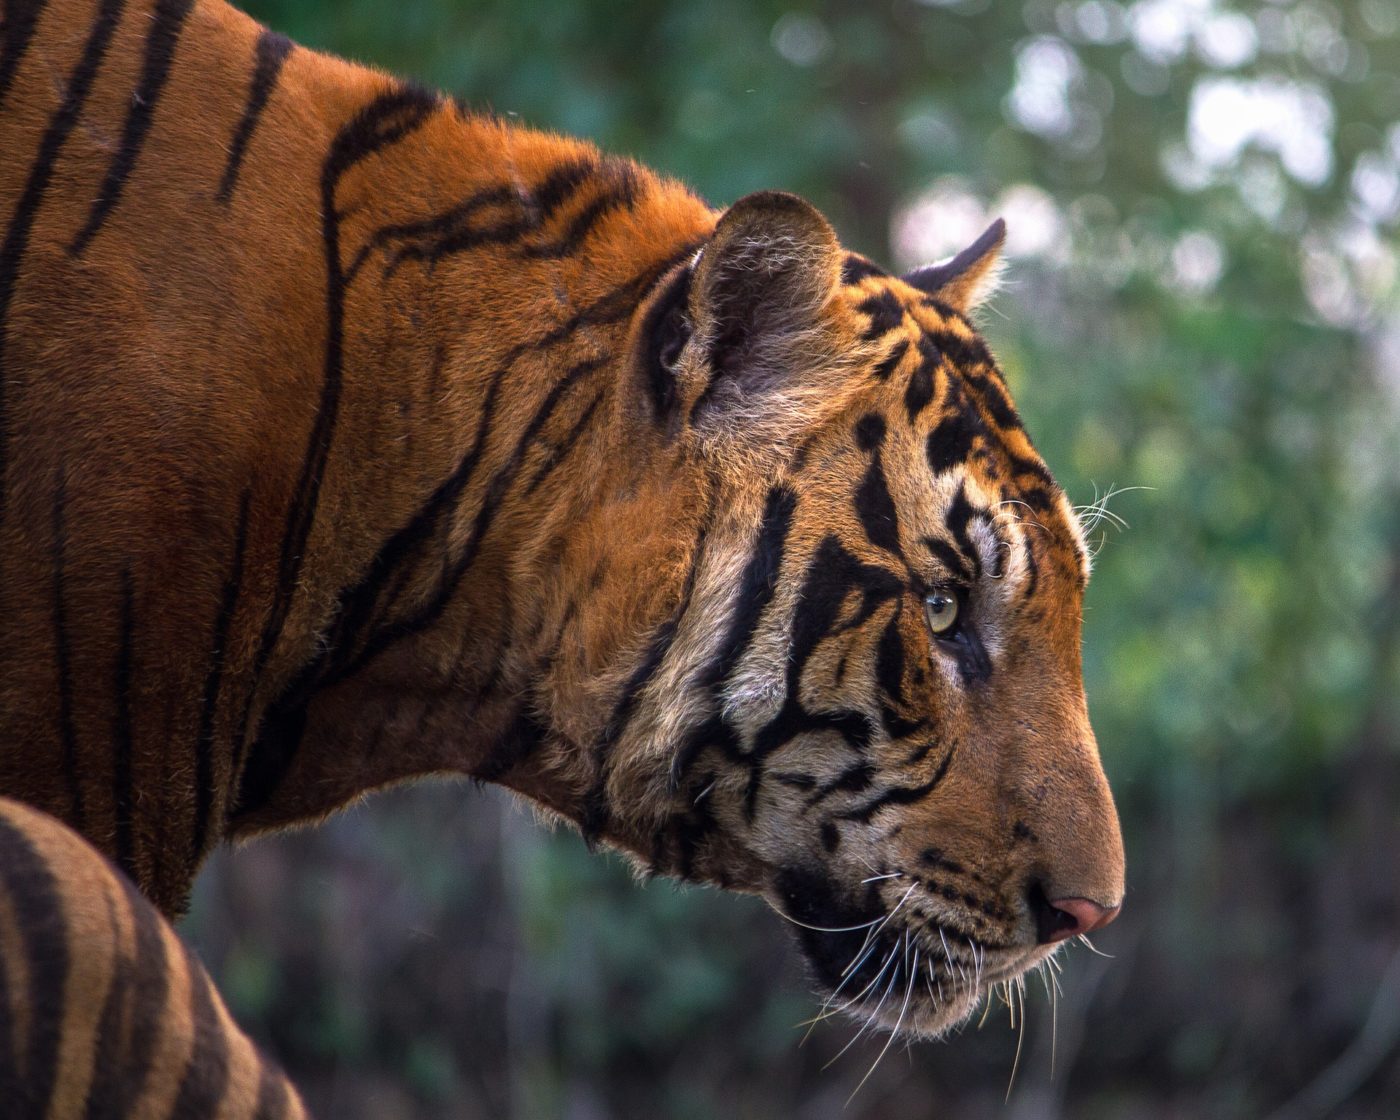 Bengáli tigrisek lenyúzott bőrét foglalták le a határőrök